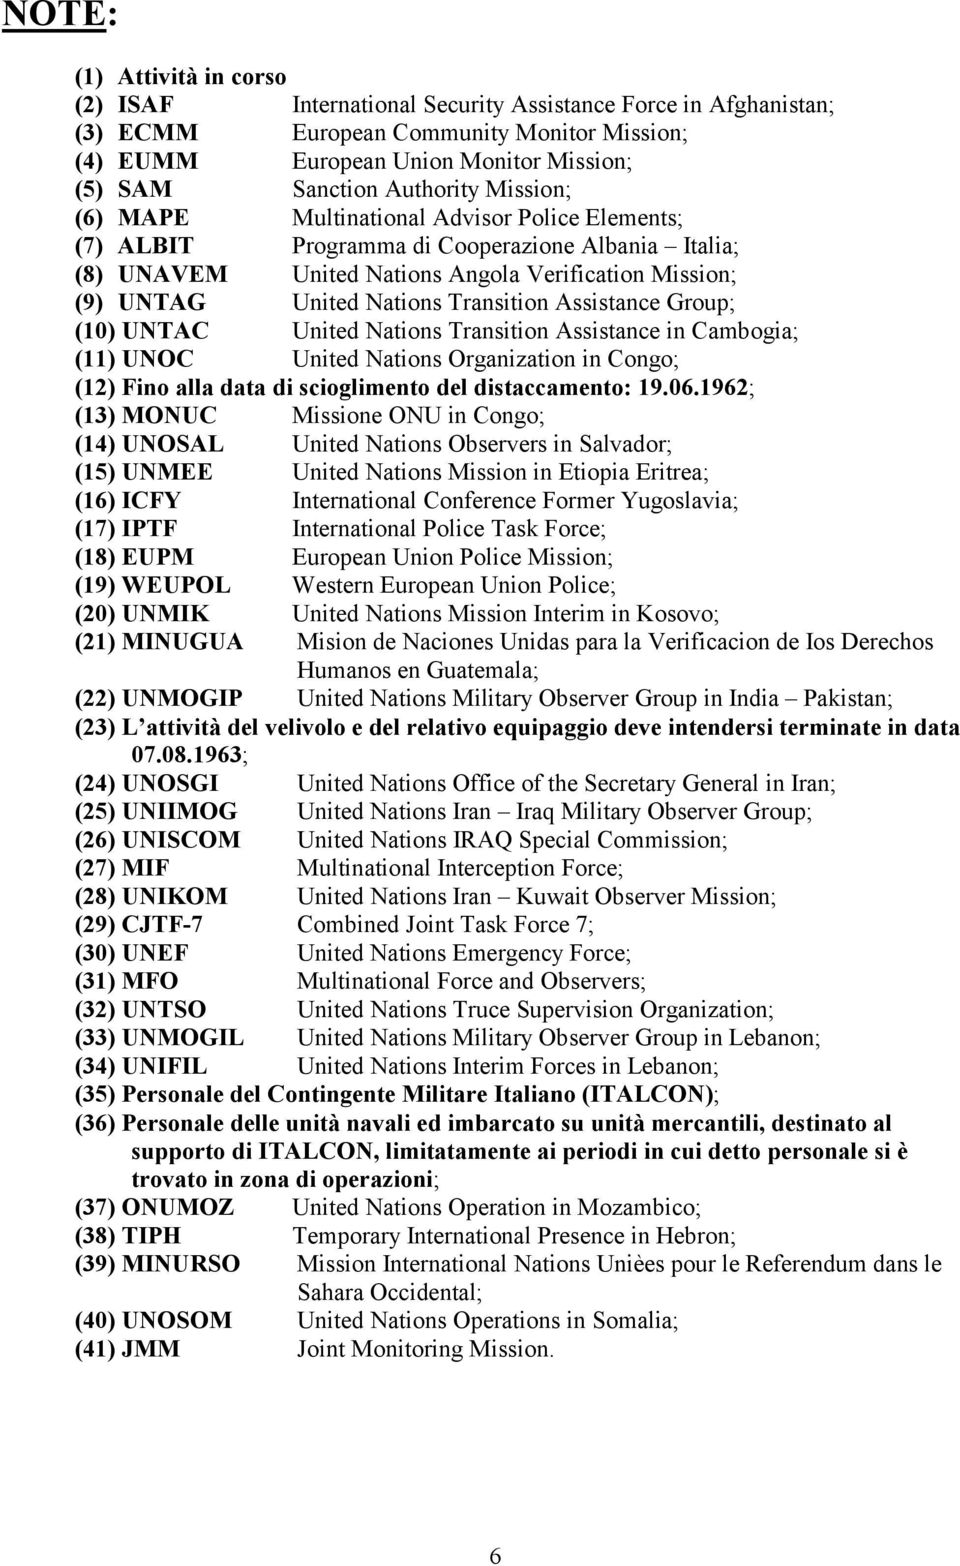 Transition Assistance Group; (10) UNTAC United Nations Transition Assistance in Cambogia; (11) UNOC United Nations Organization in Congo; (12) Fino alla data di scioglimento del distaccamento: 19.06.